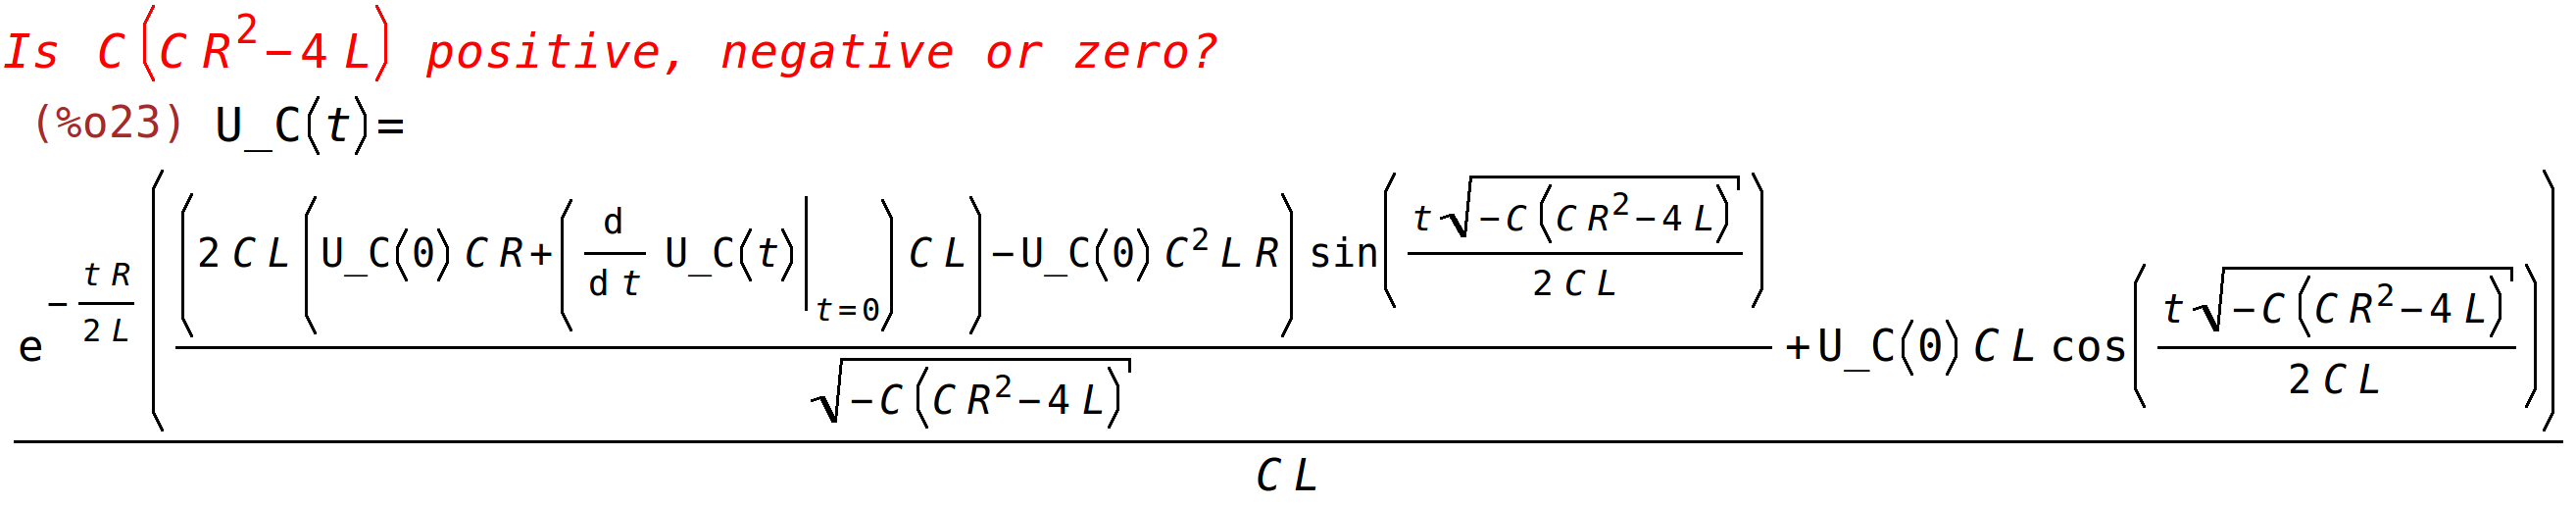 (^)n;<BR>
()(^(()/())((((()(at('diff((),t,1),)))()^)((sqrt((^)))/()))/sqrt((^))()((sqrt((^)))/())))/()